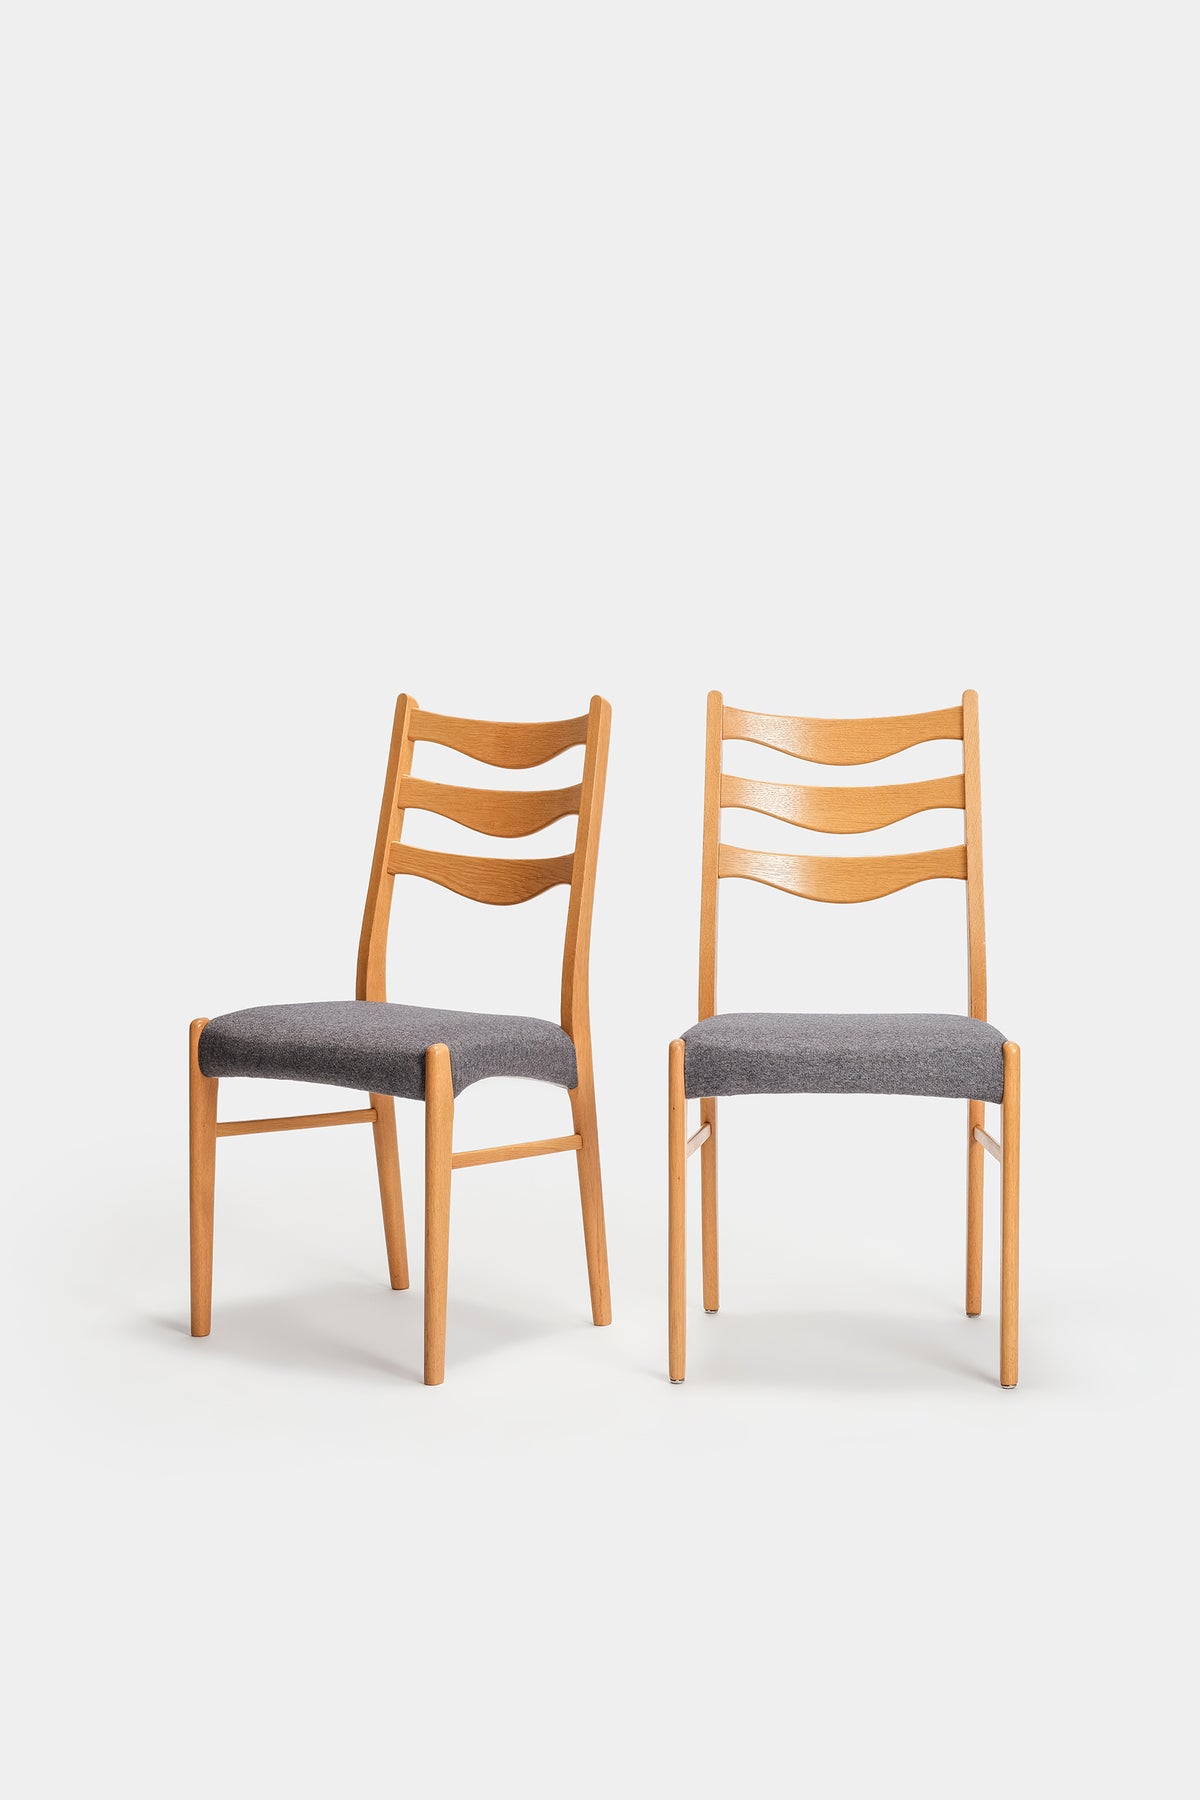 Arne Wahl Iversen, Pair of Chairs, Glyngore, Denmark, 60s